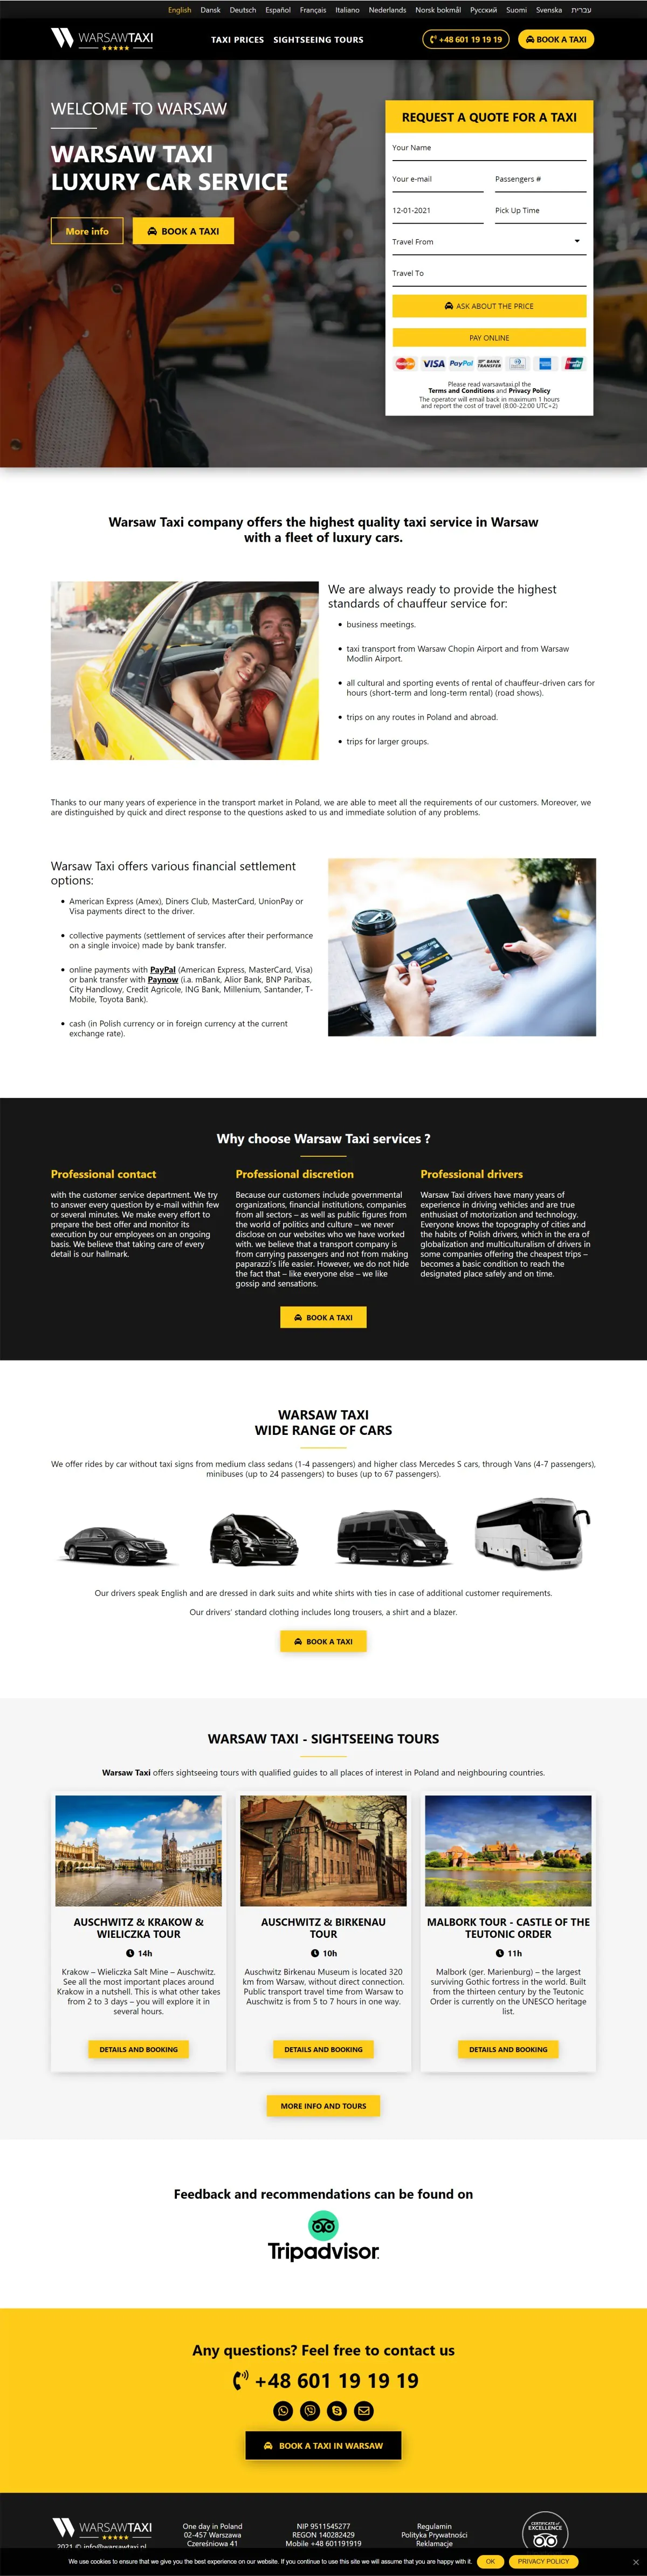 Tworzenie strony internetowej dla firmy. Usługi taxi tworzenie strony internetowej dla firmy,usługi taxi,tworzenie strony internetowej Tworzenie Strony Internetowej Dla Firmy Uslugi Taxi Webpanda webpanda